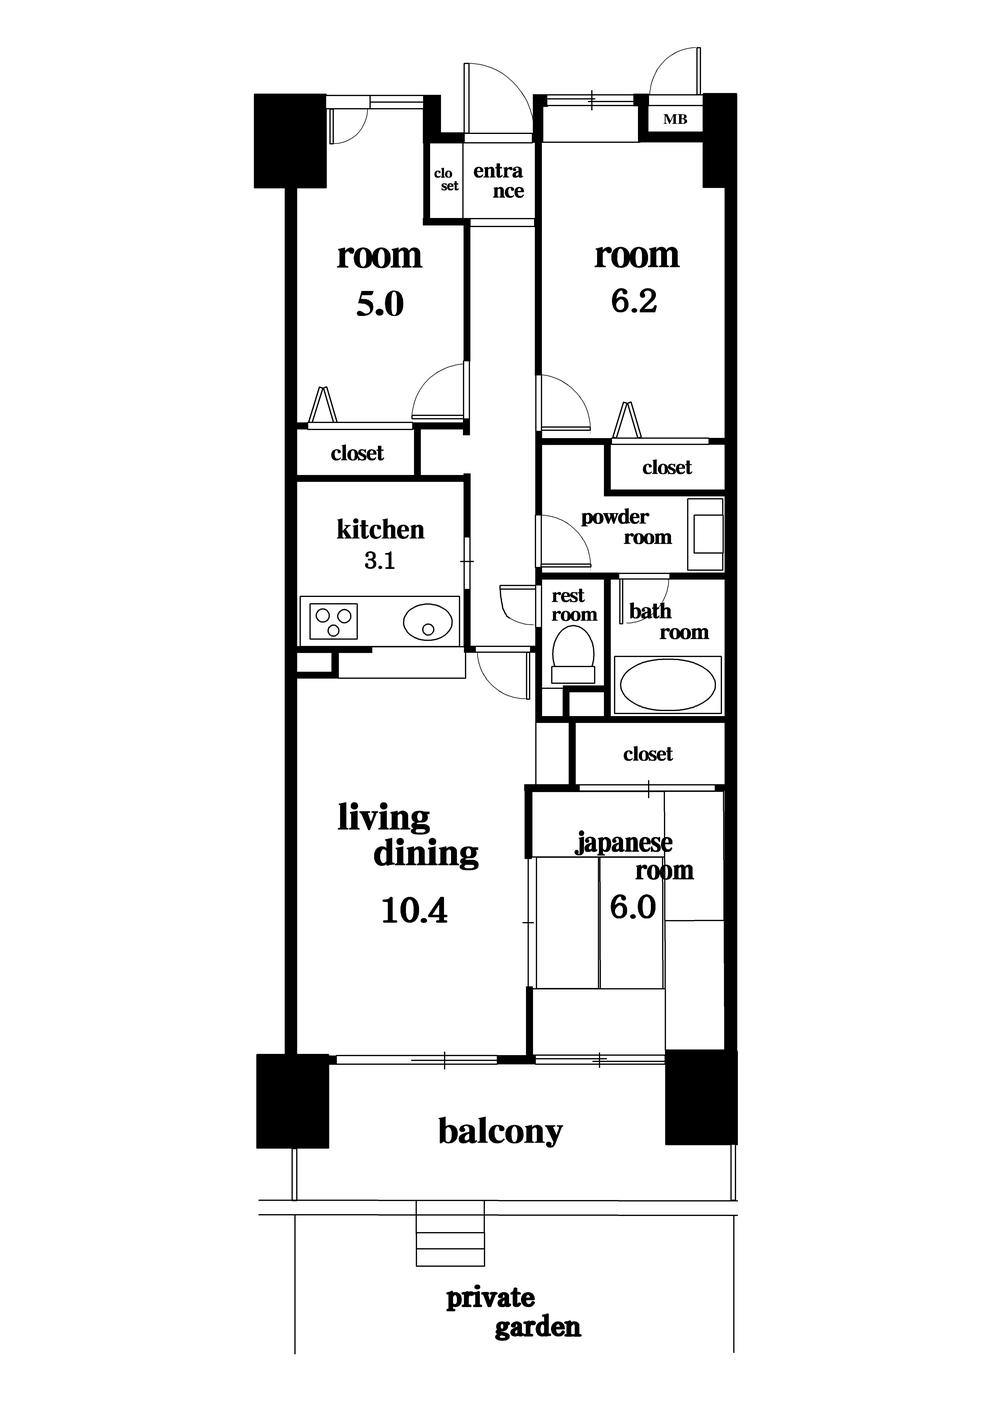 Floor plan. 3LDK, Price 29,900,000 yen, Occupied area 71.31 sq m , Balcony area 11.6 sq m floor plan